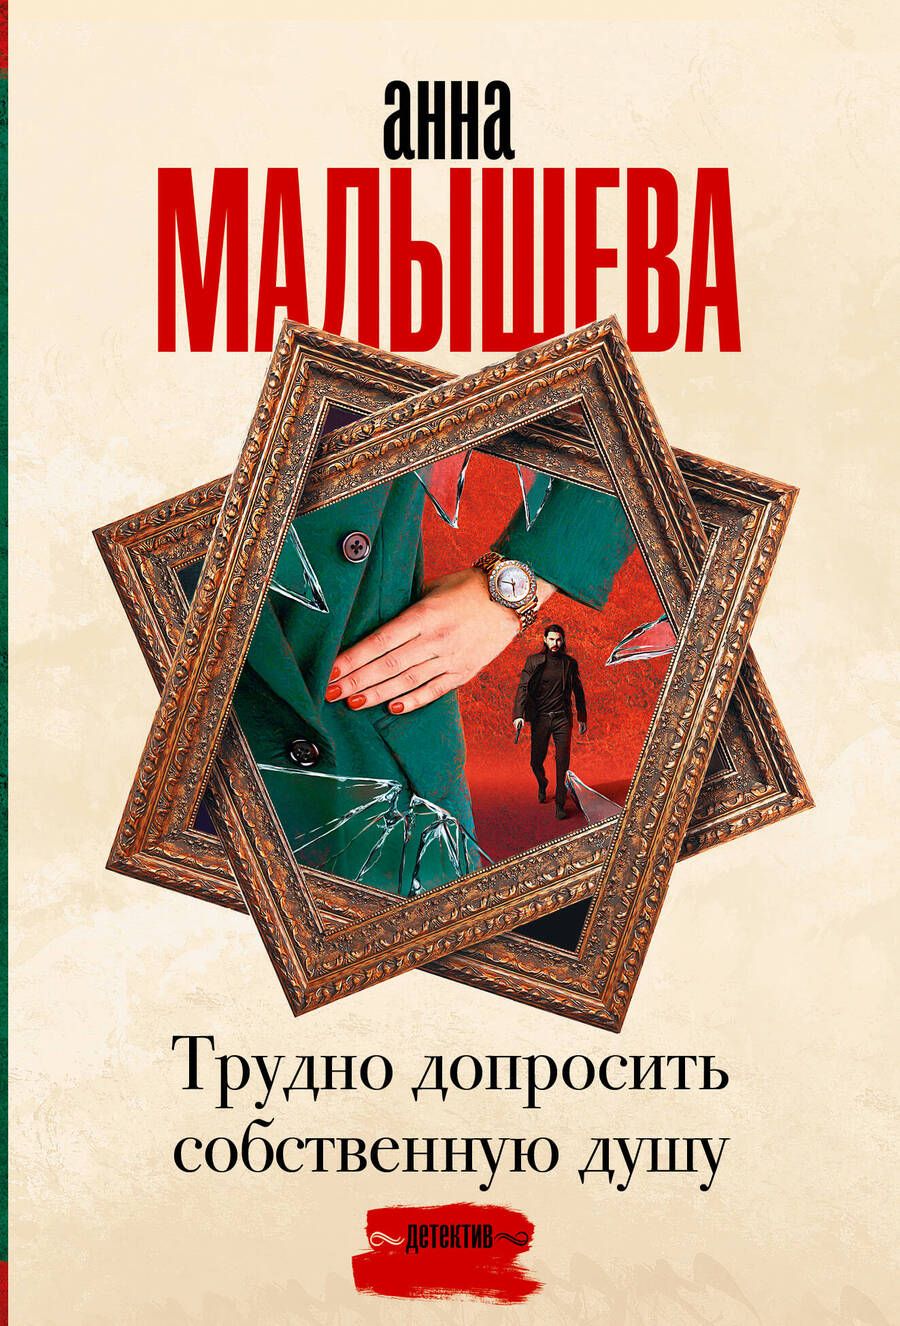 Обложка книги "Анна Малышева: Трудно допросить собственную душу"